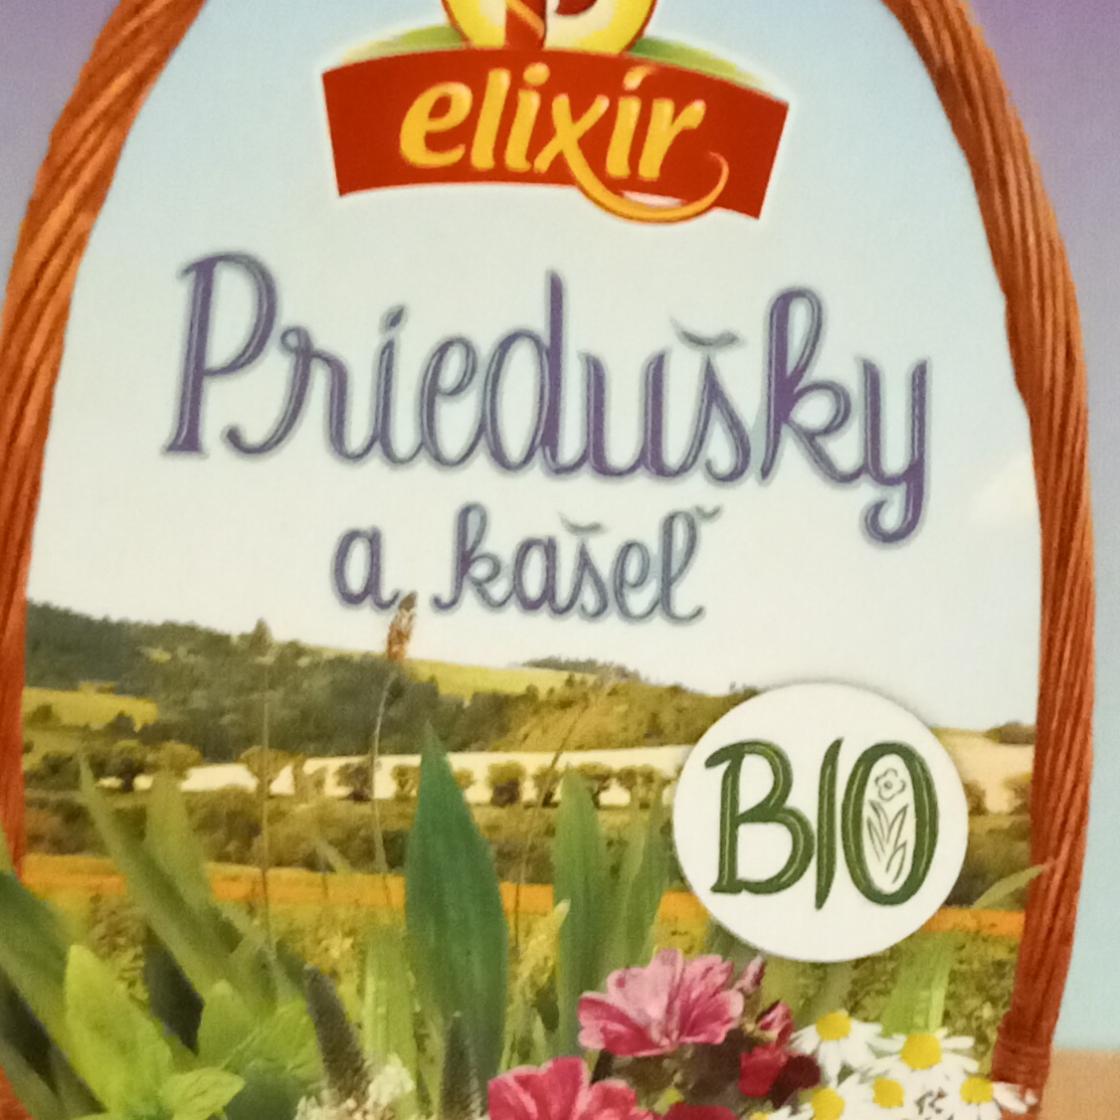 Fotografie - Priedušky a kašeľ bio bylinný čaj Elixír